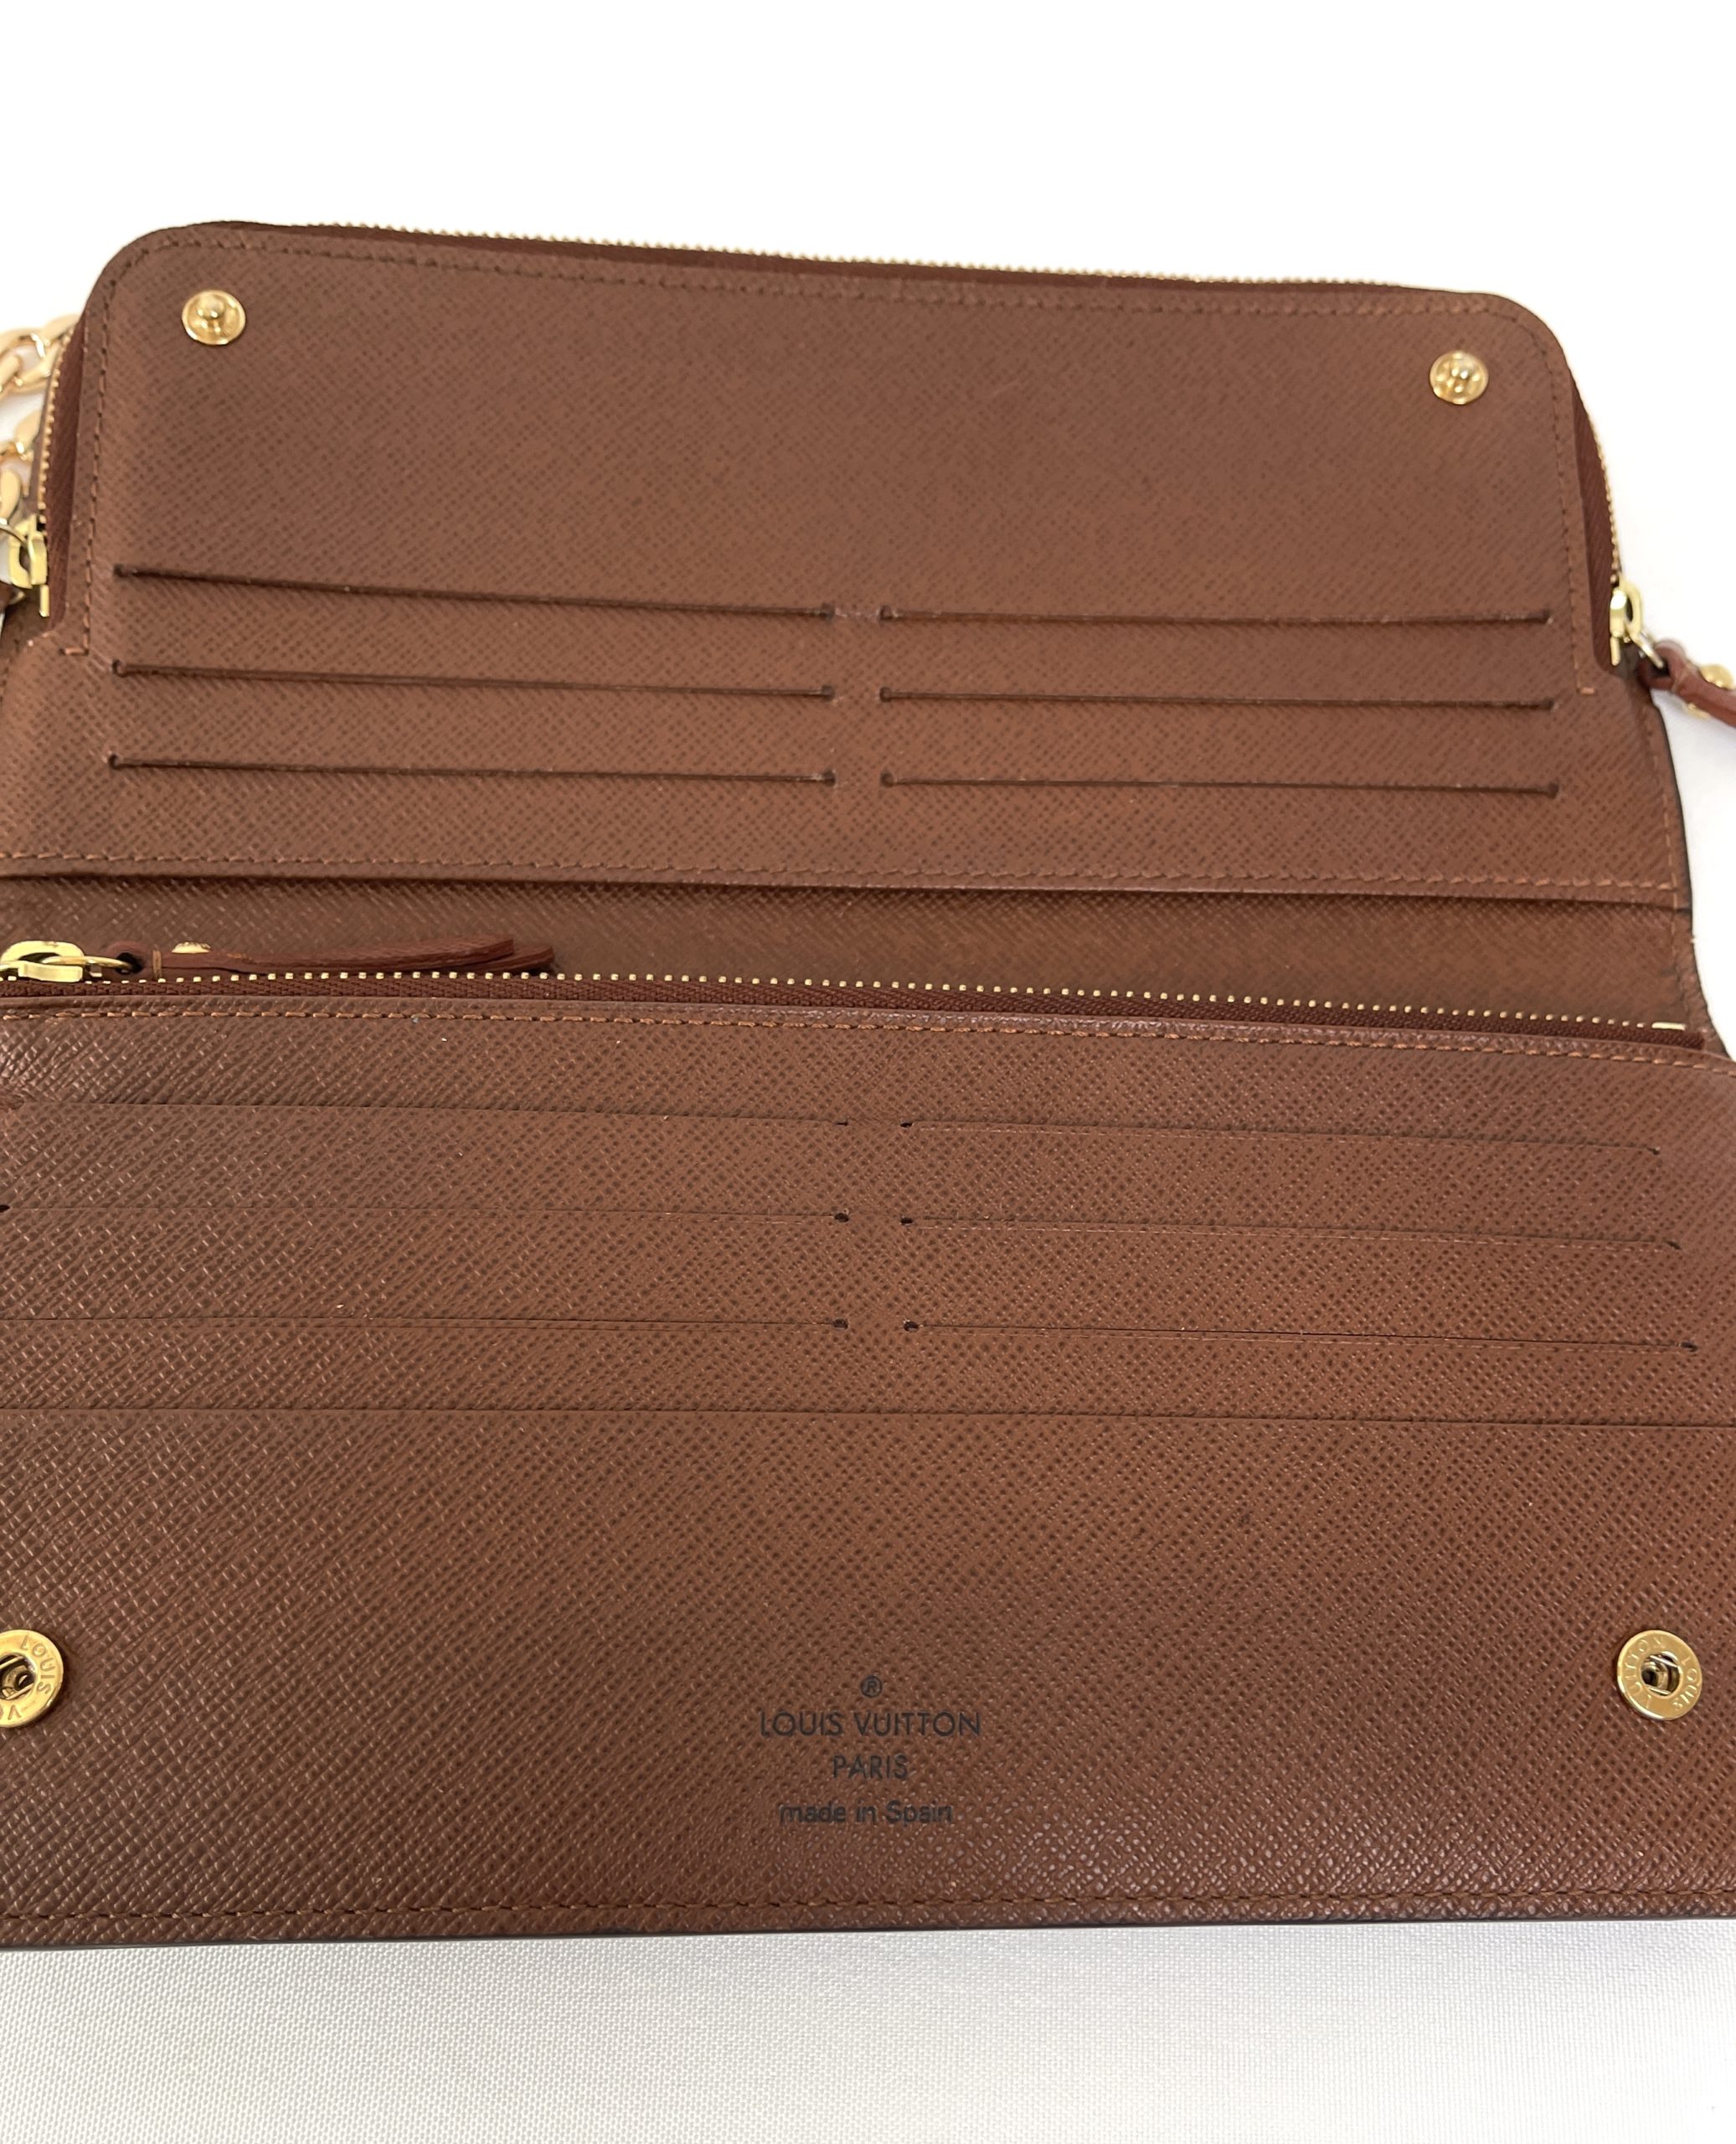 Louis Vuitton 2013 LV Monogram Insolite Wallet - Wallets, Accessories